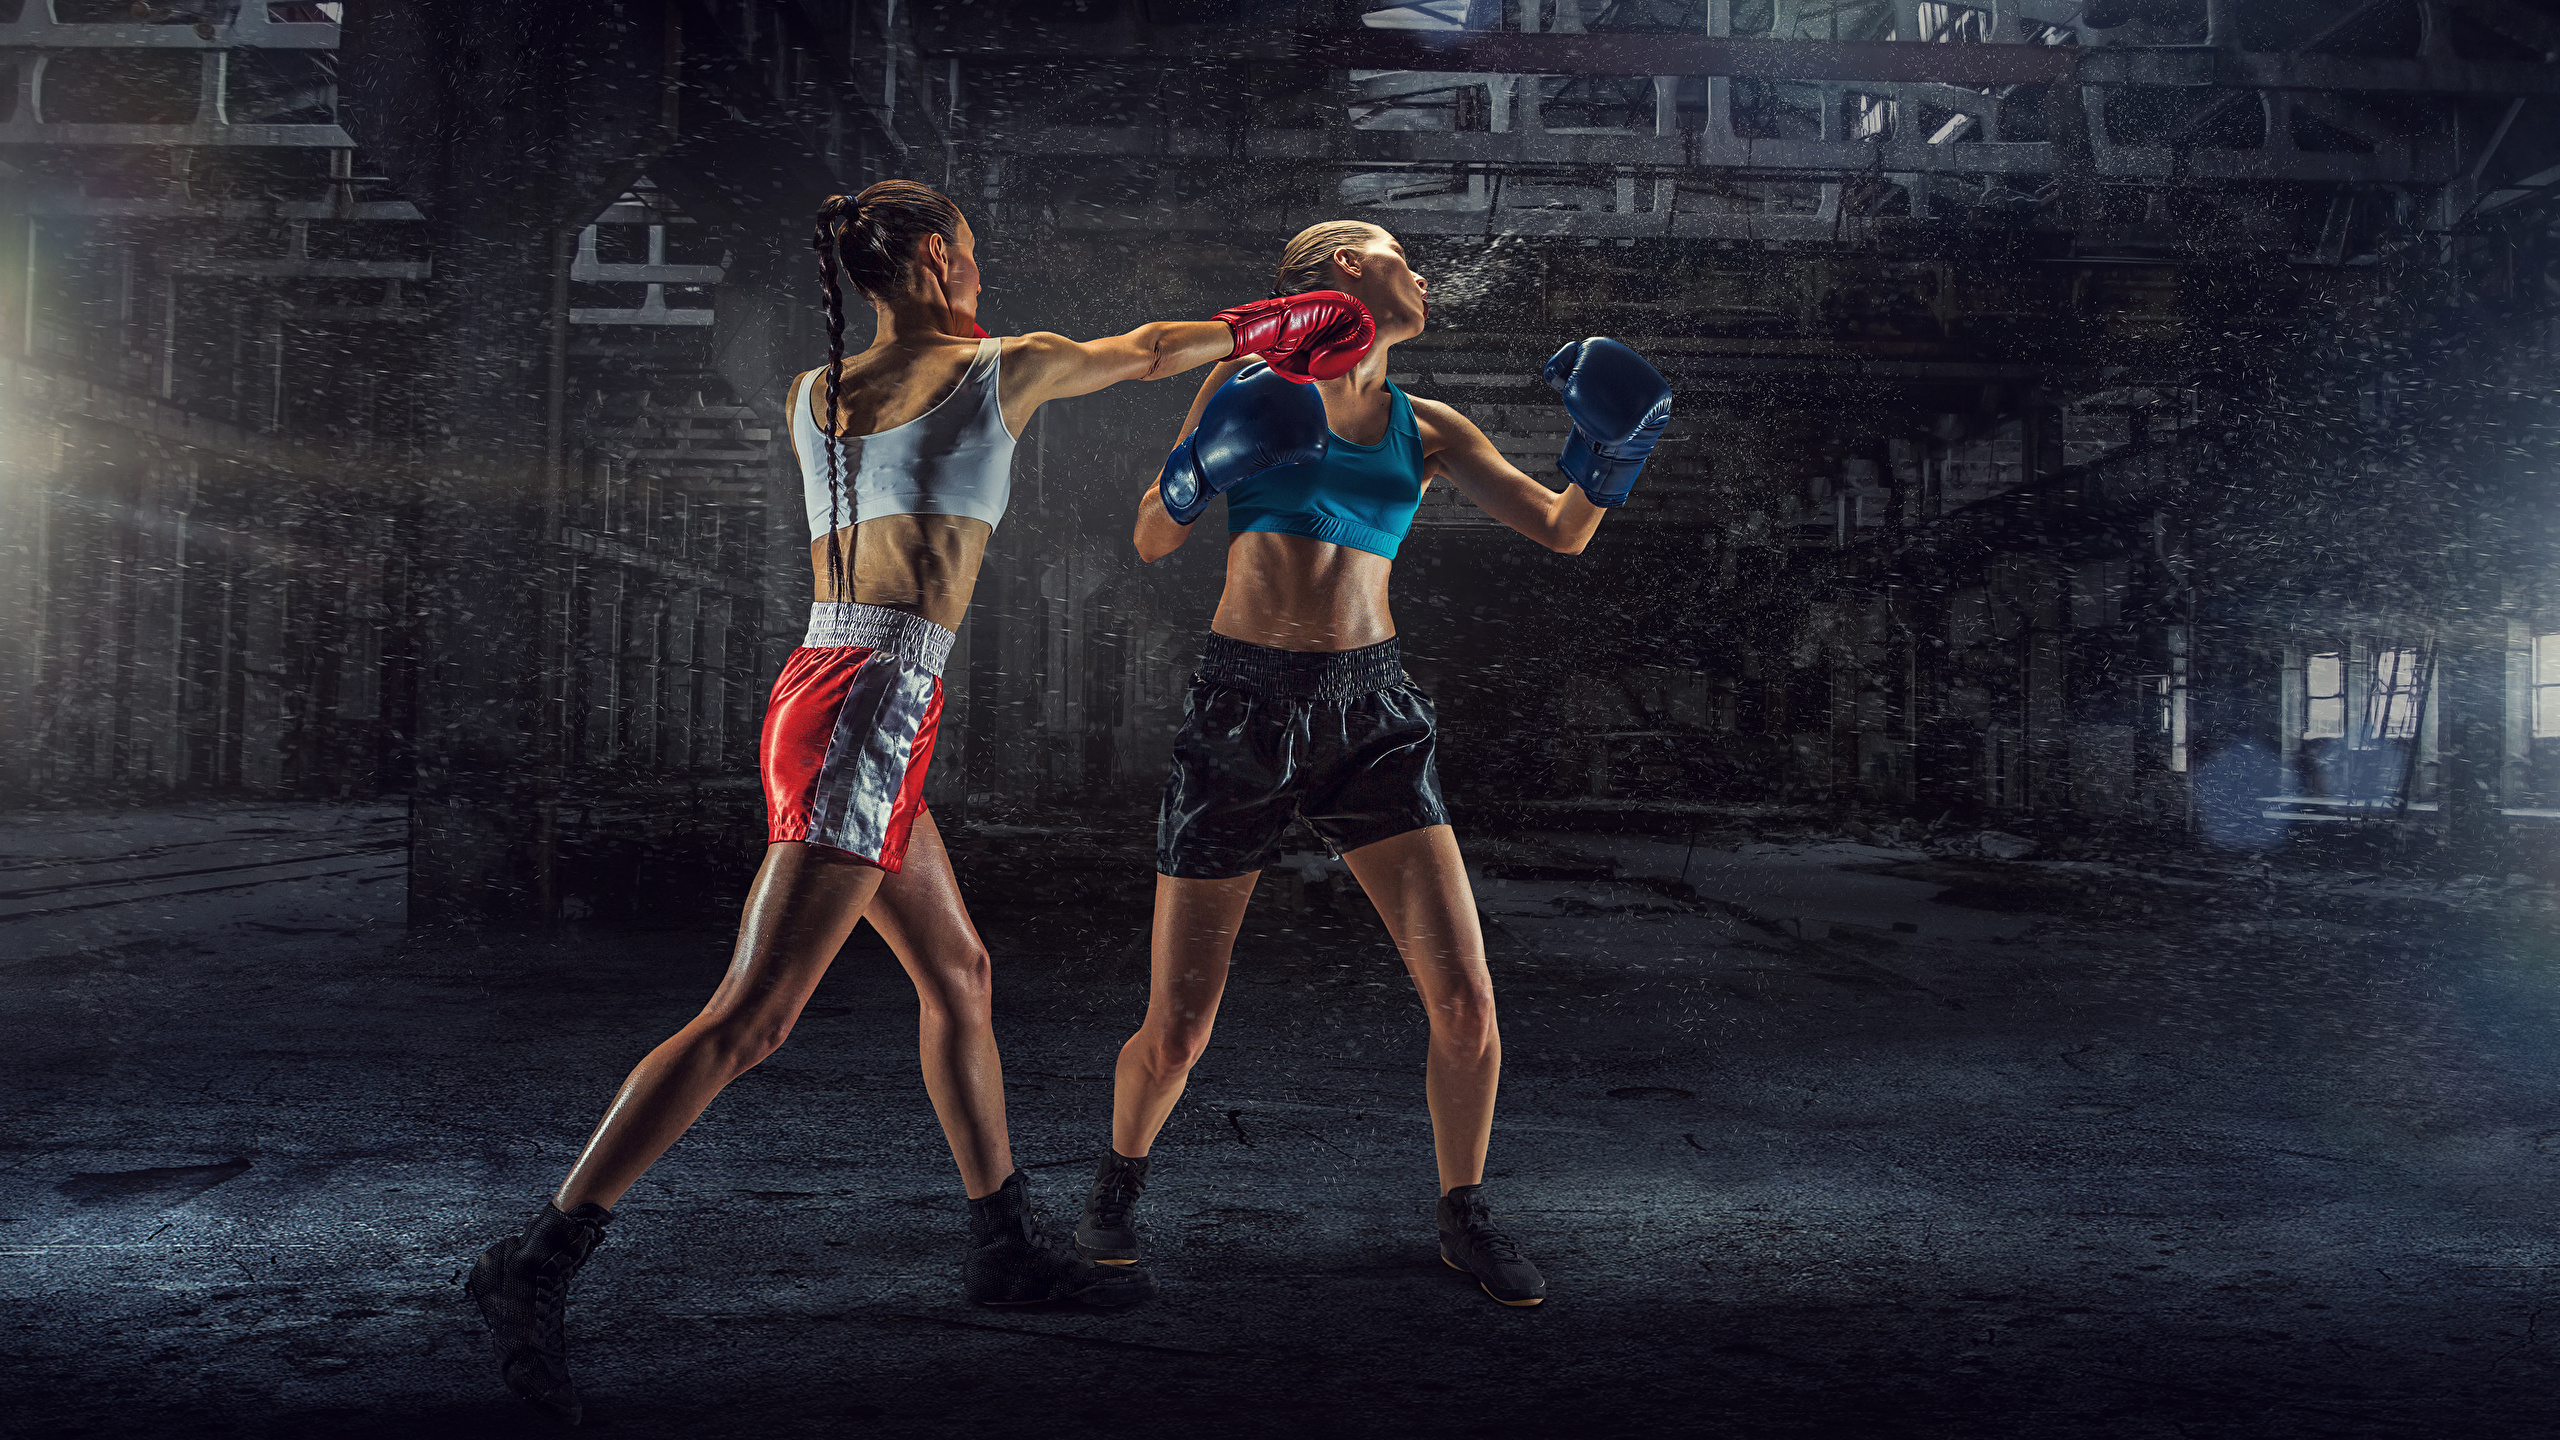 壁紙 2560x1440 ボクシング 2 二つ 制服 ワークアウト パンチ 少女 スポーツ ダウンロード 写真